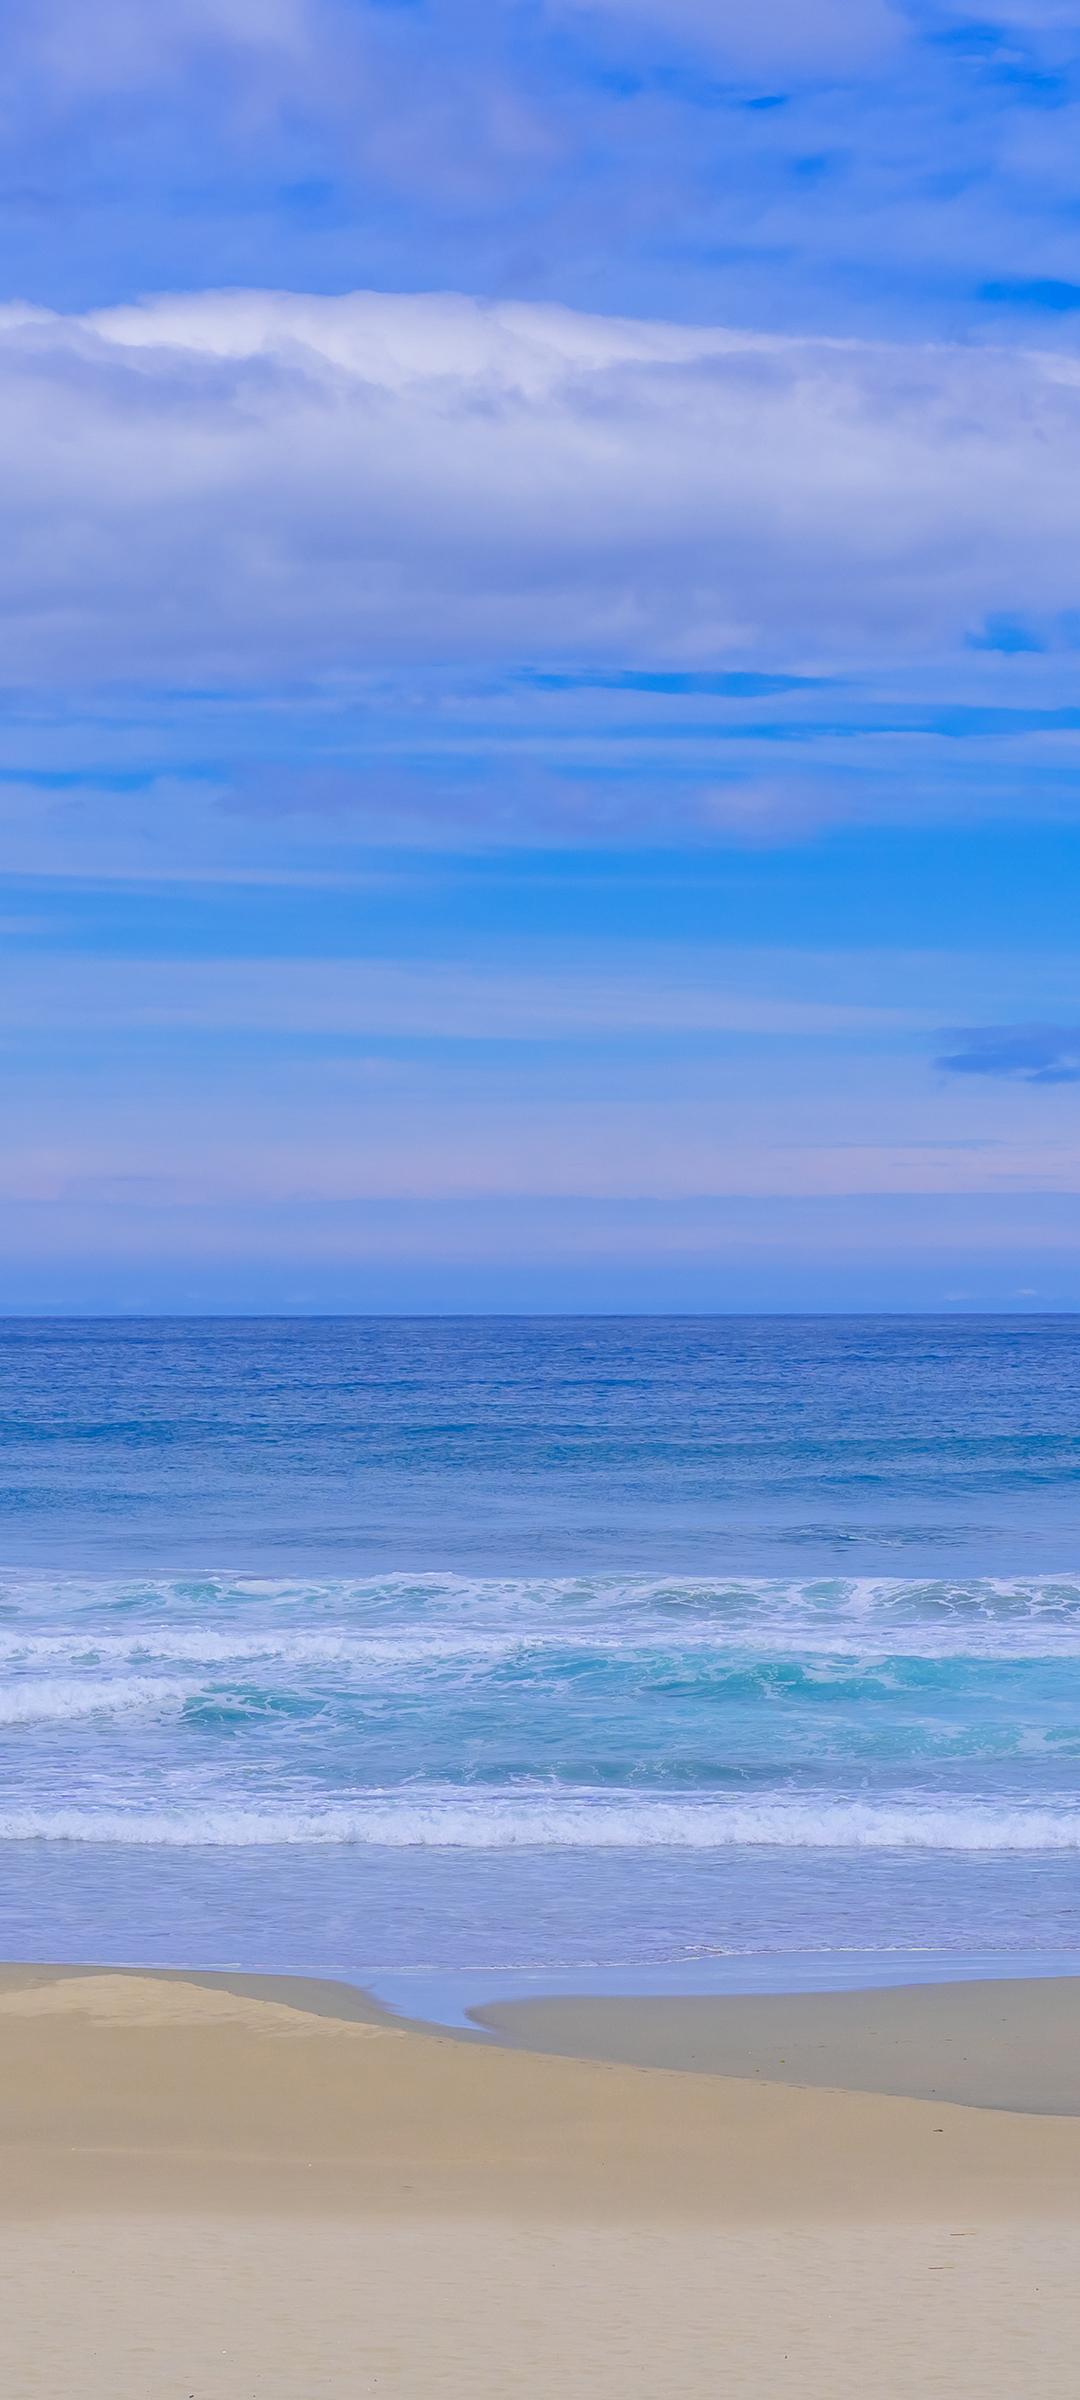 海边 蓝天白云 沙滩风景手机壁纸背景